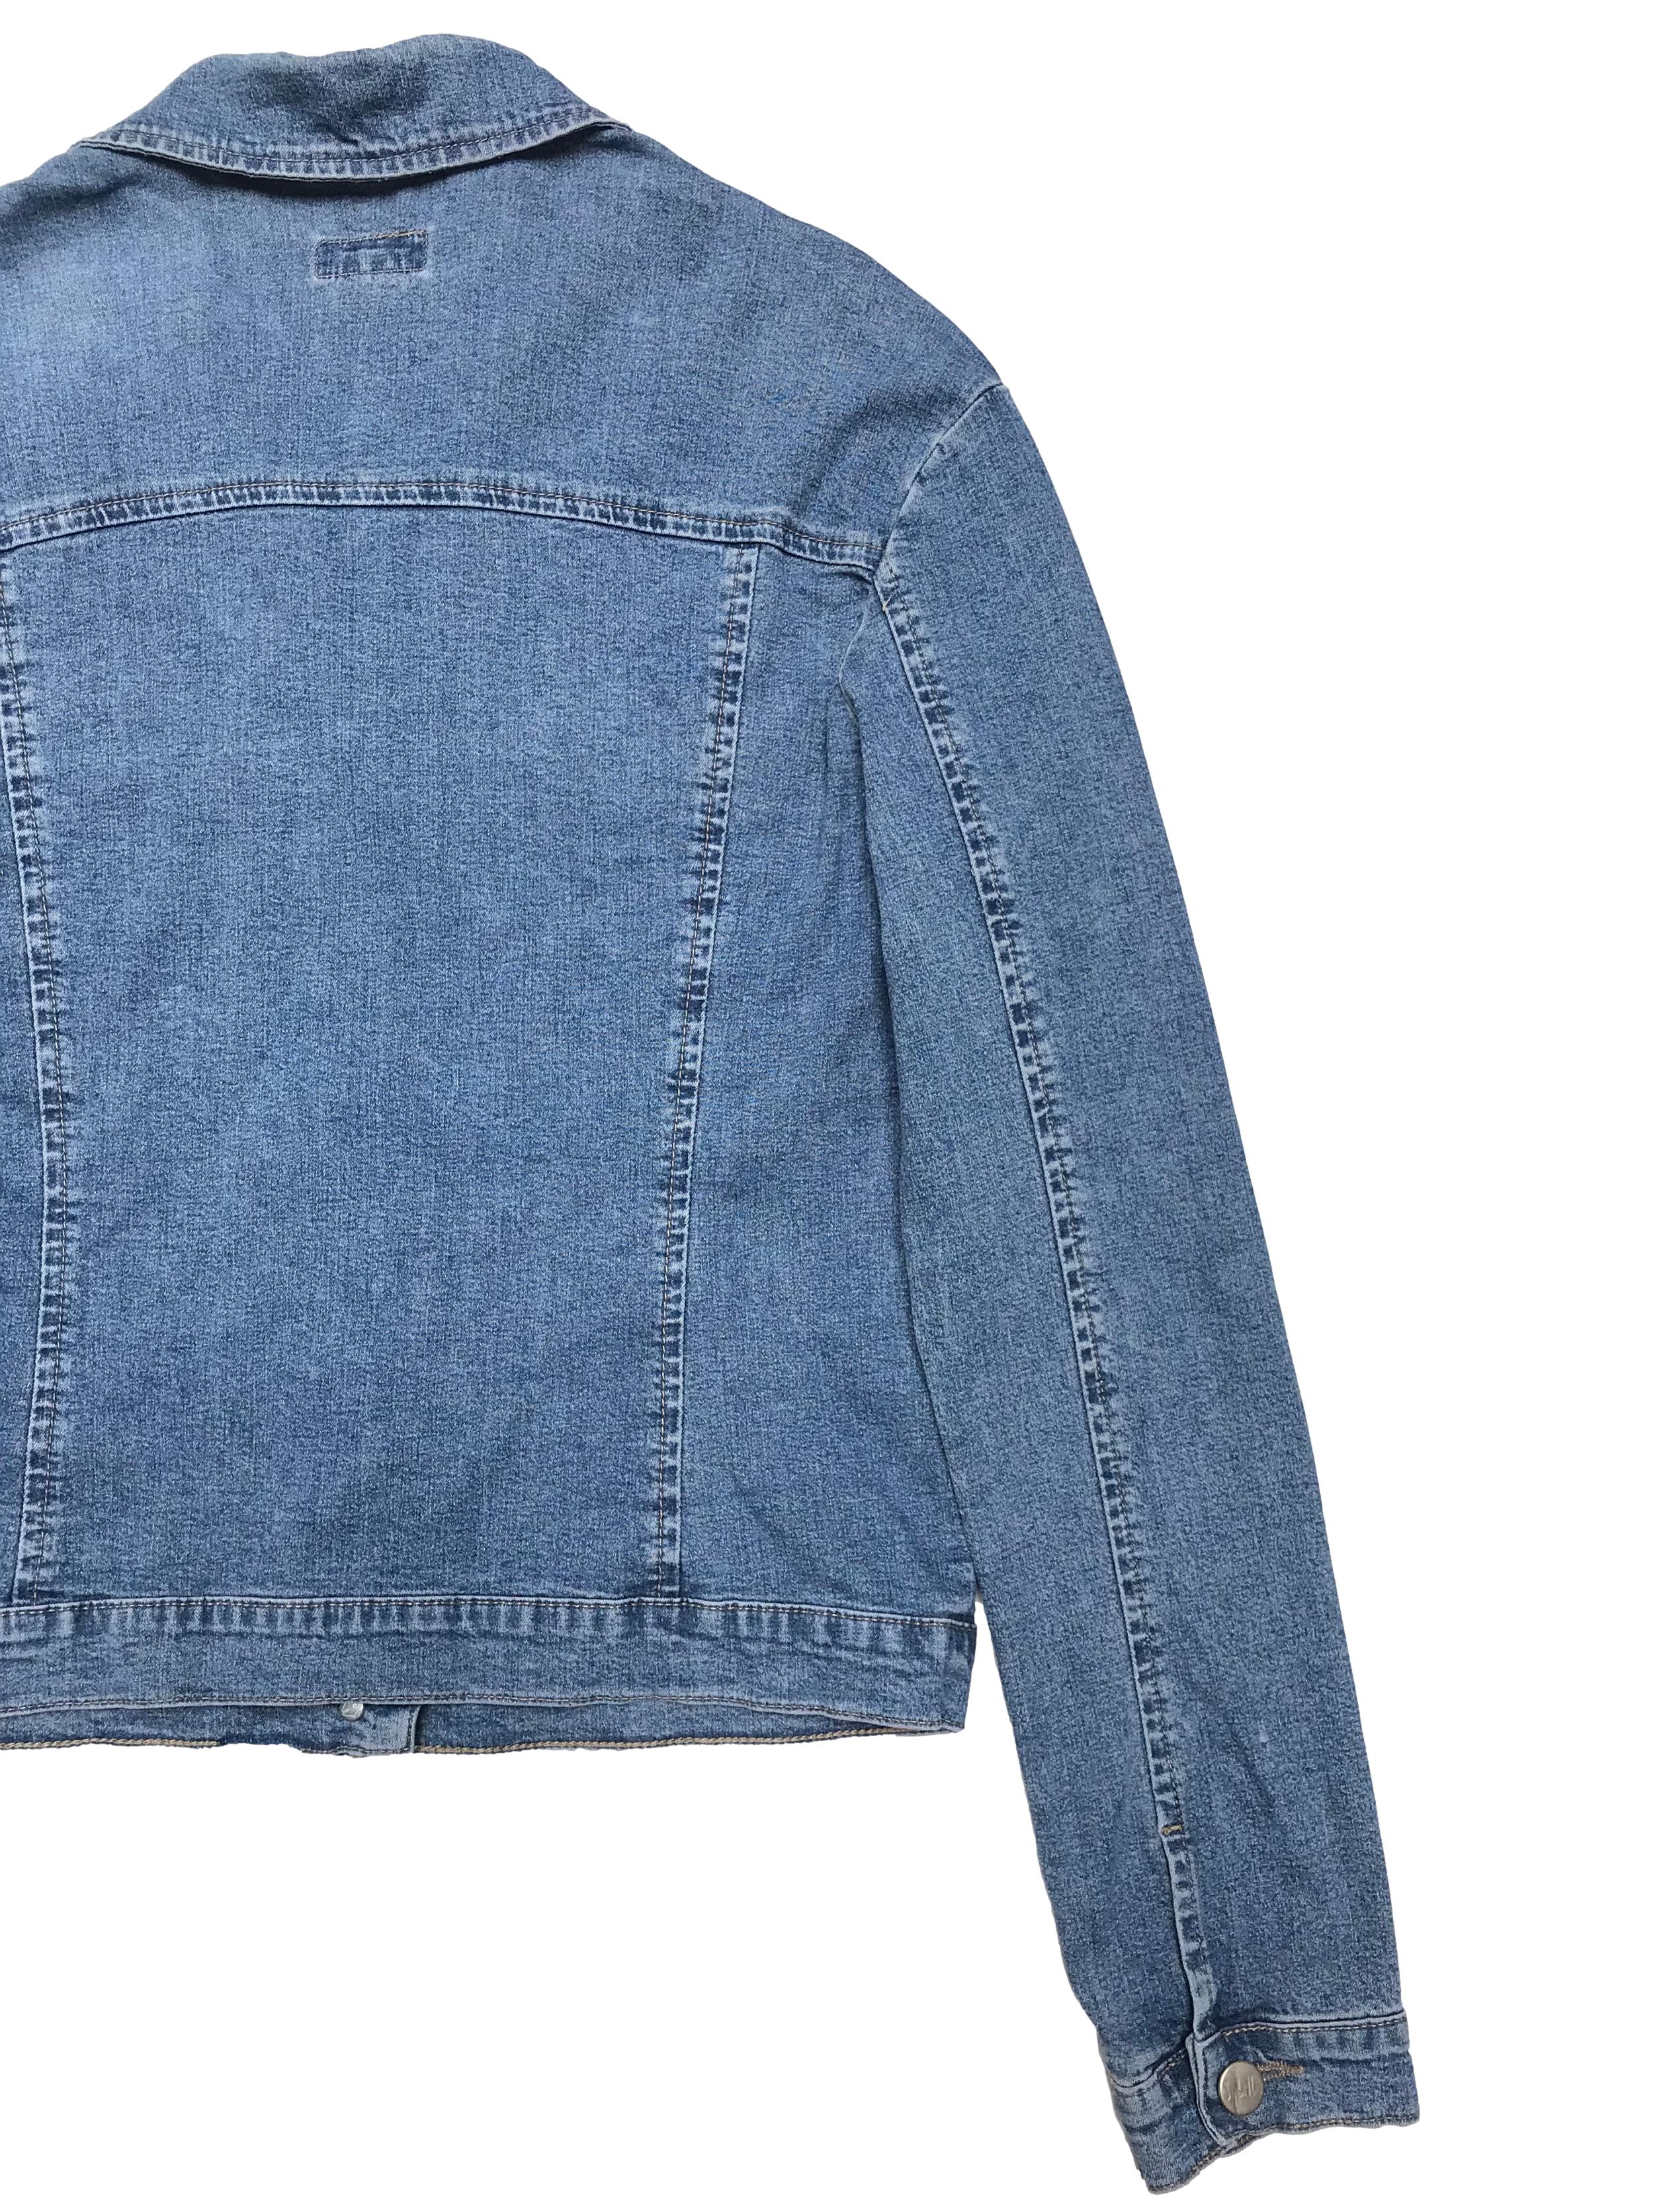 Casaca Sybilla de jean delgado 98% algodón con botones metálicos. Busto 95cm Largo 50cm. Tiene ligeros signos de uso.